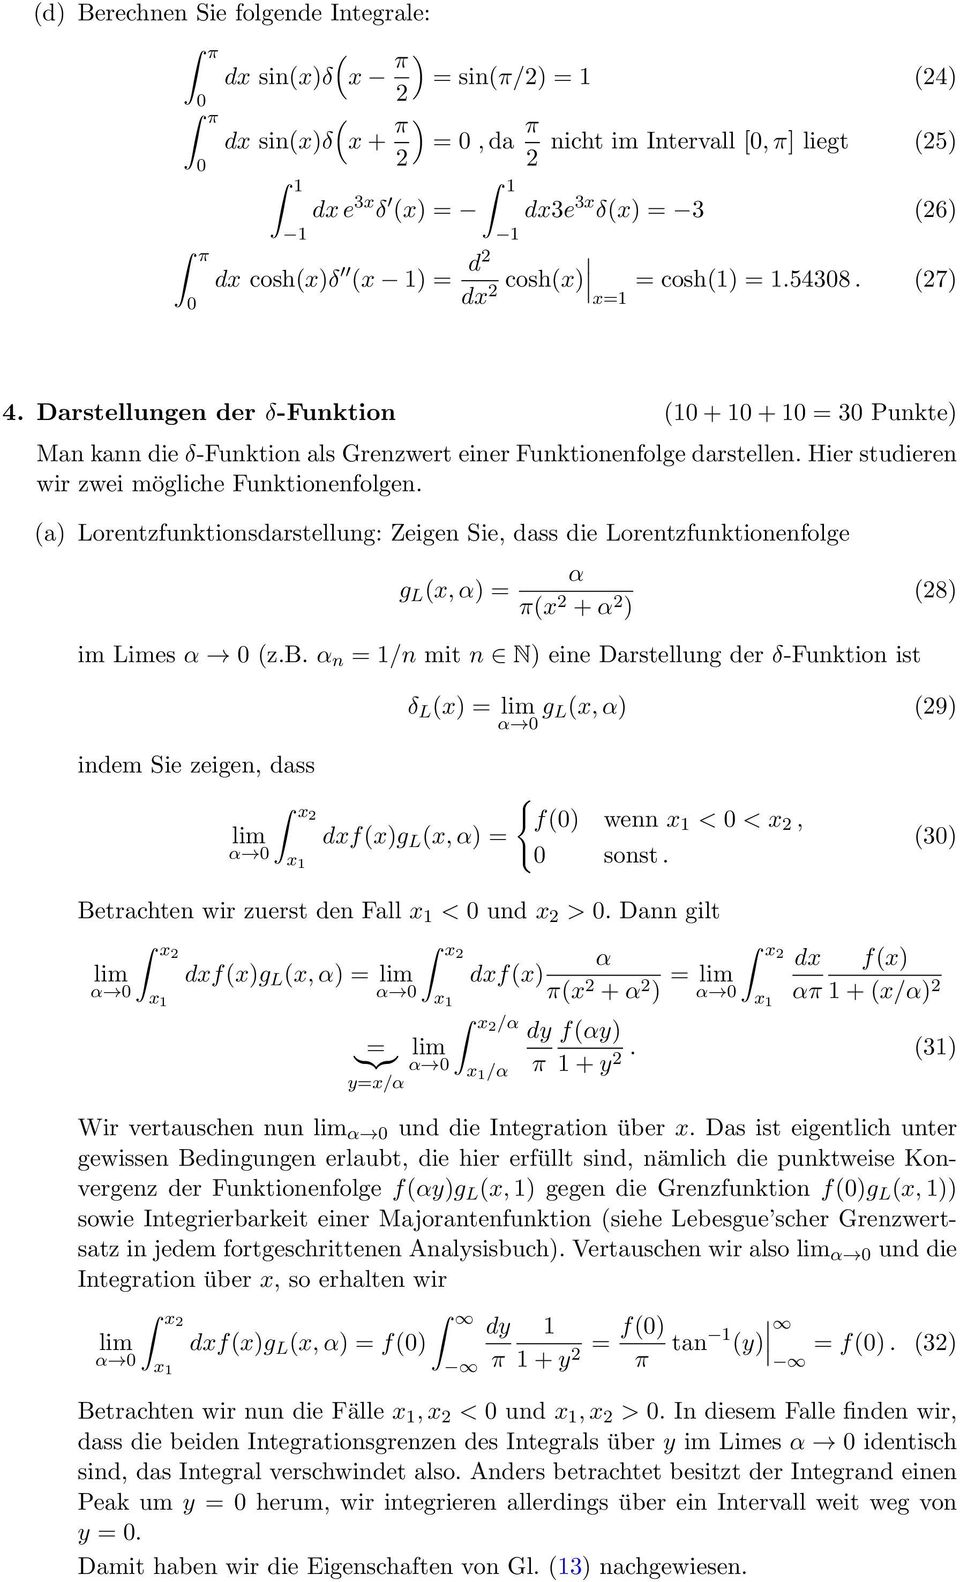 a Lorentzfunktionsdarstellung: Zeigen Sie, dass die Lorentzfunktionenfolge g L x, = x + 8 im Limes z.b.